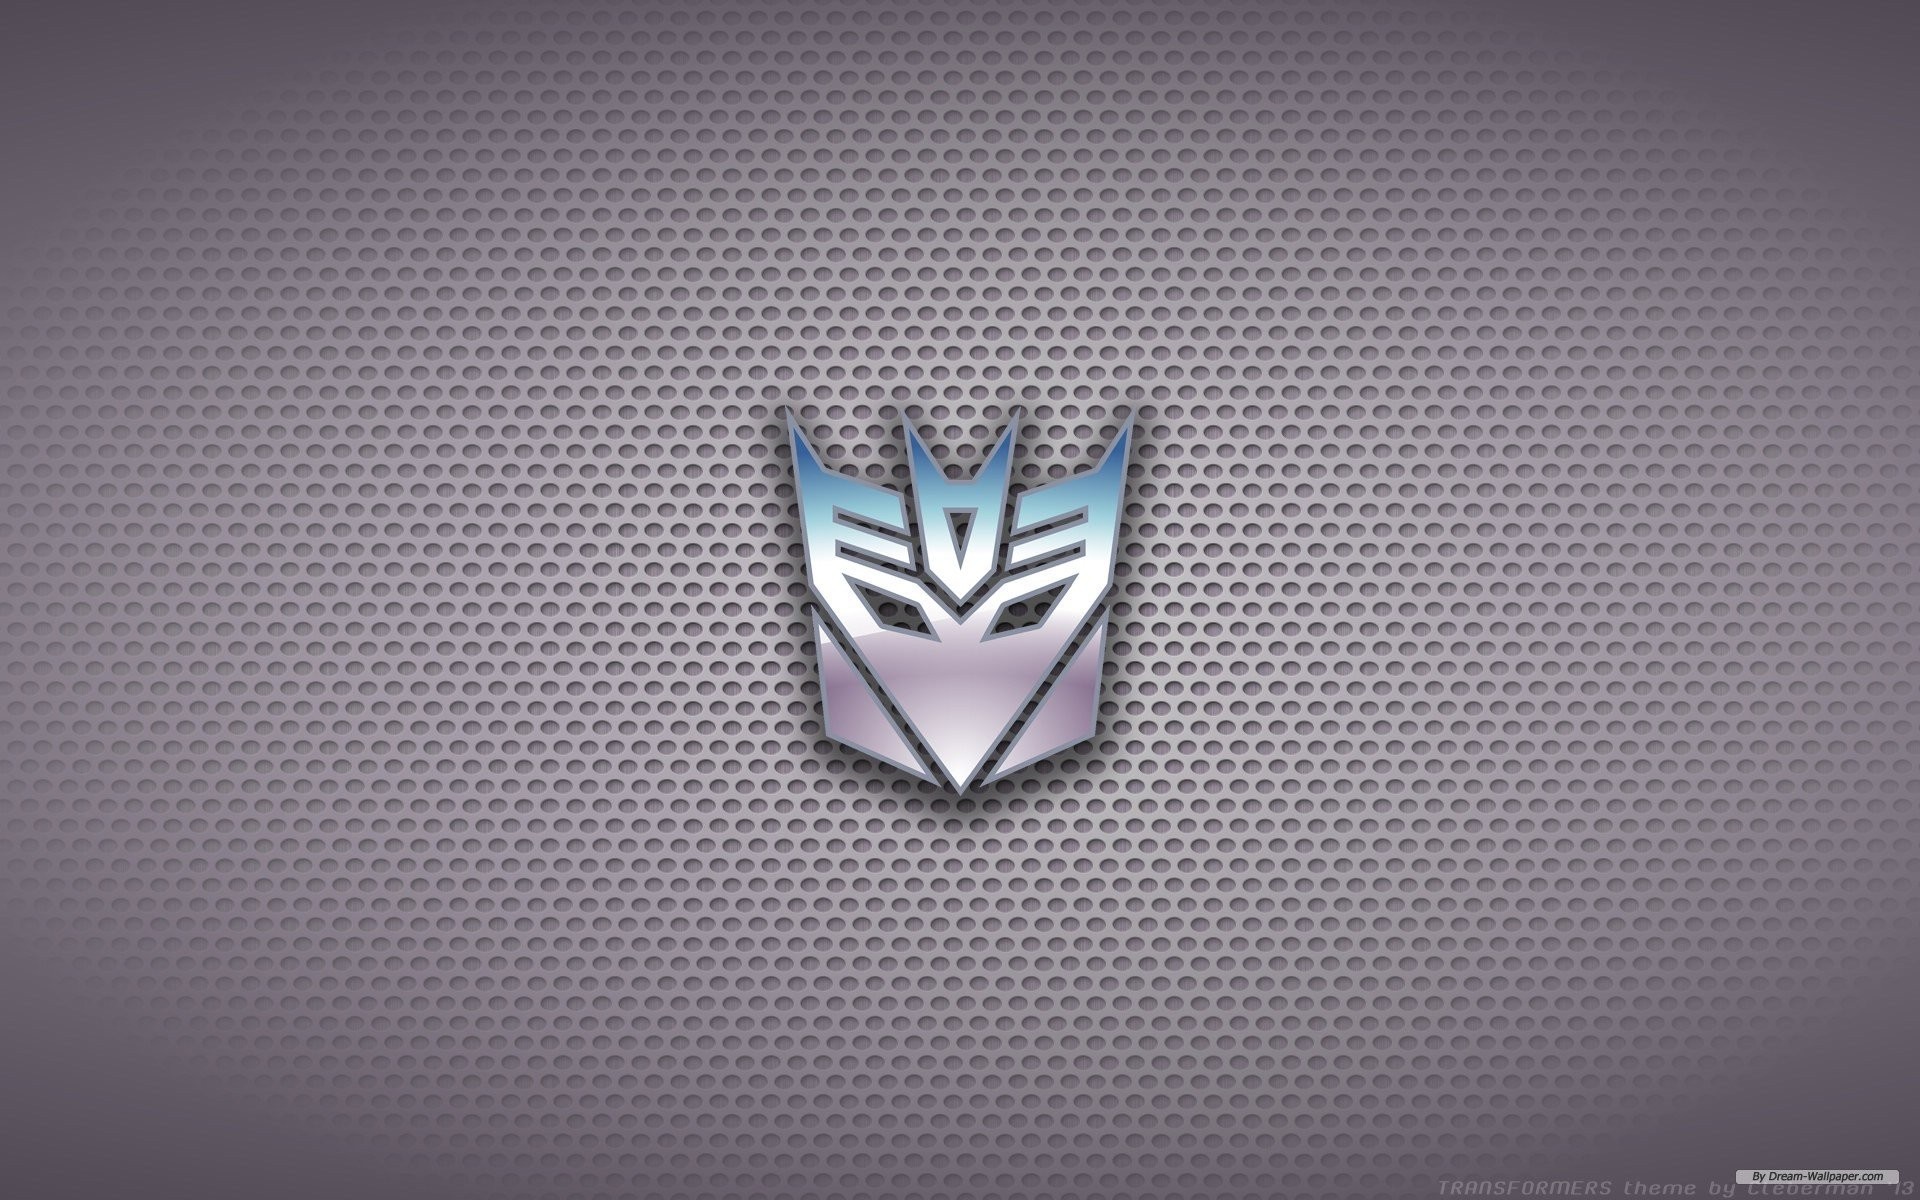 Transformers Decepticons decepticons – transformers Decepticons – Transformers transformers decepticons symbol